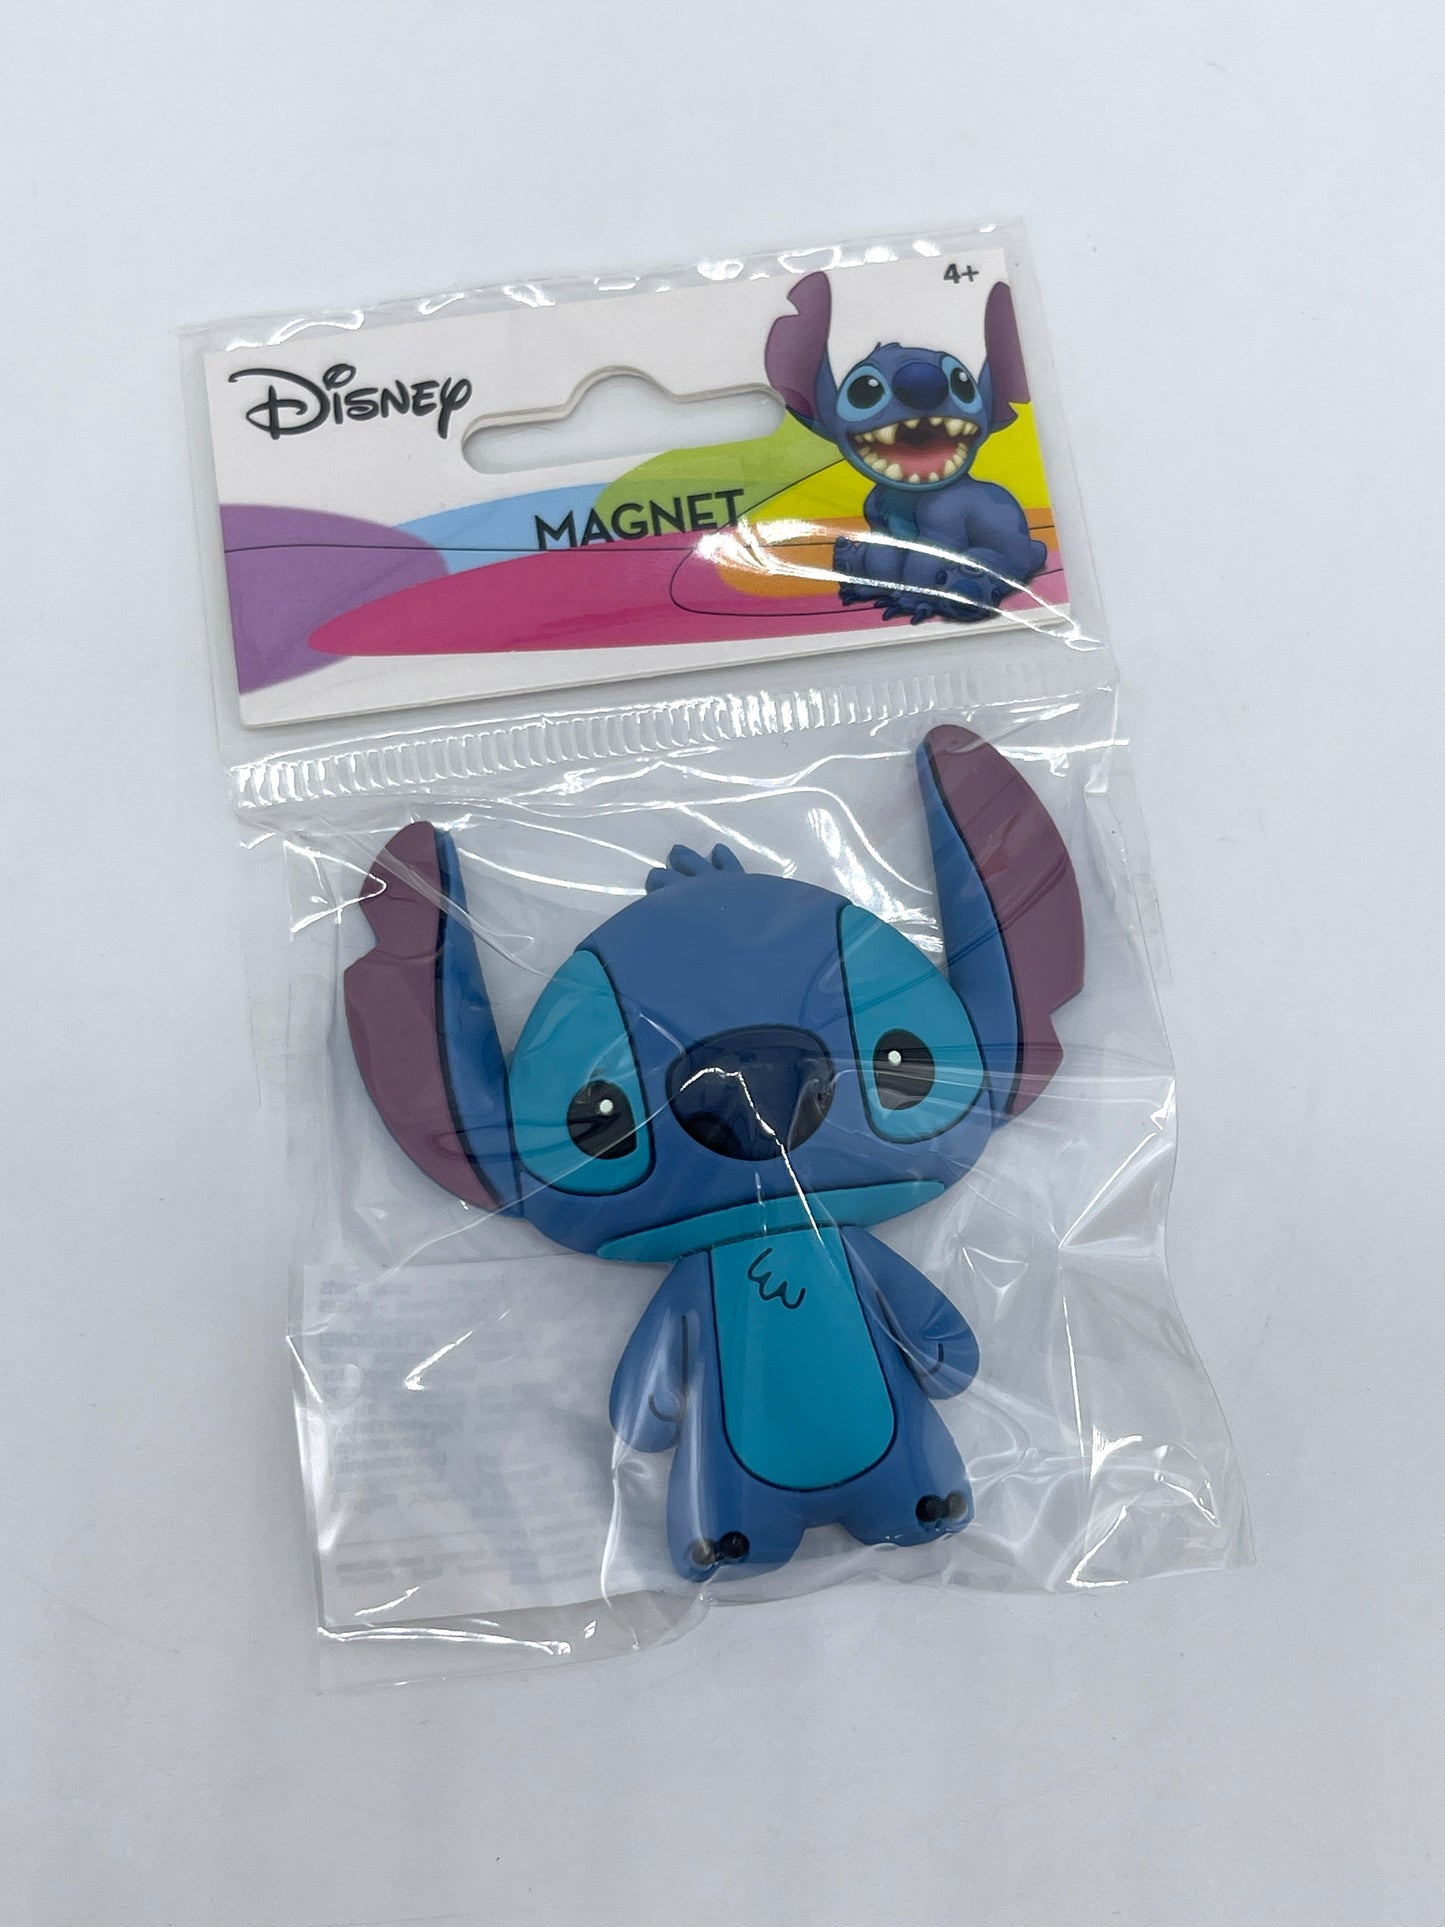 Disney Lilo & Stitch "Relief Magnet" verschiedene Figuren zur Auswahl